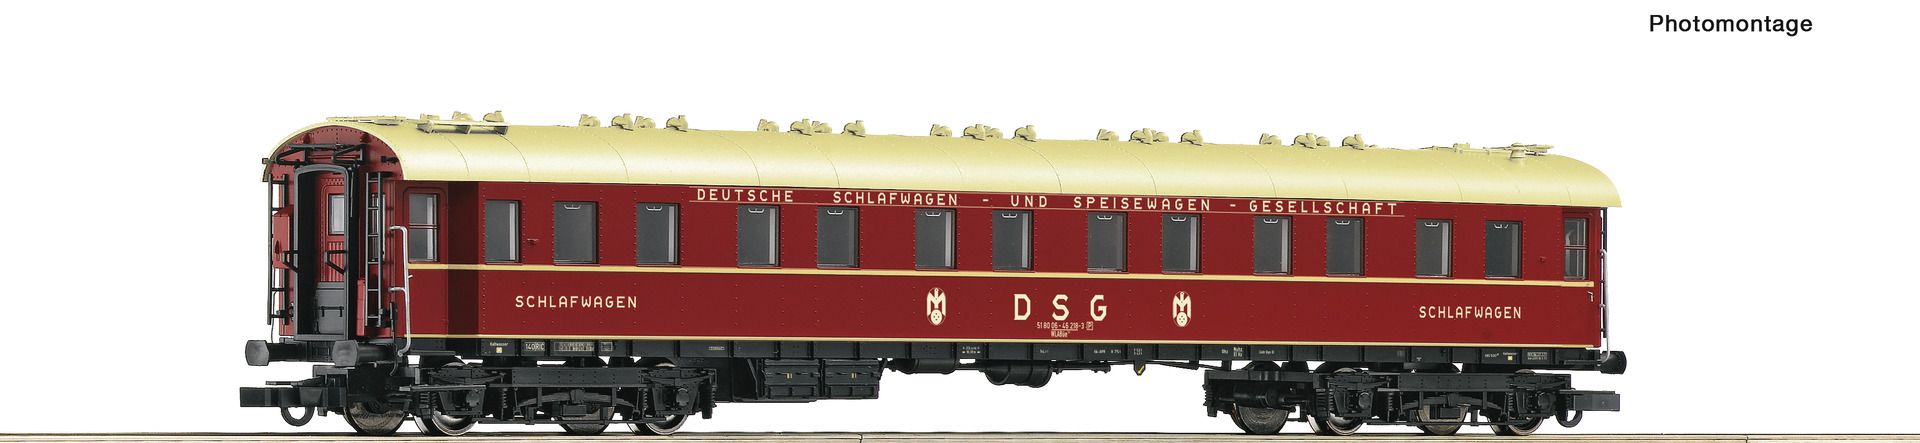 Roco 74870 - Schlafwagen DSG WLAB4üge, DB, Ep.IV